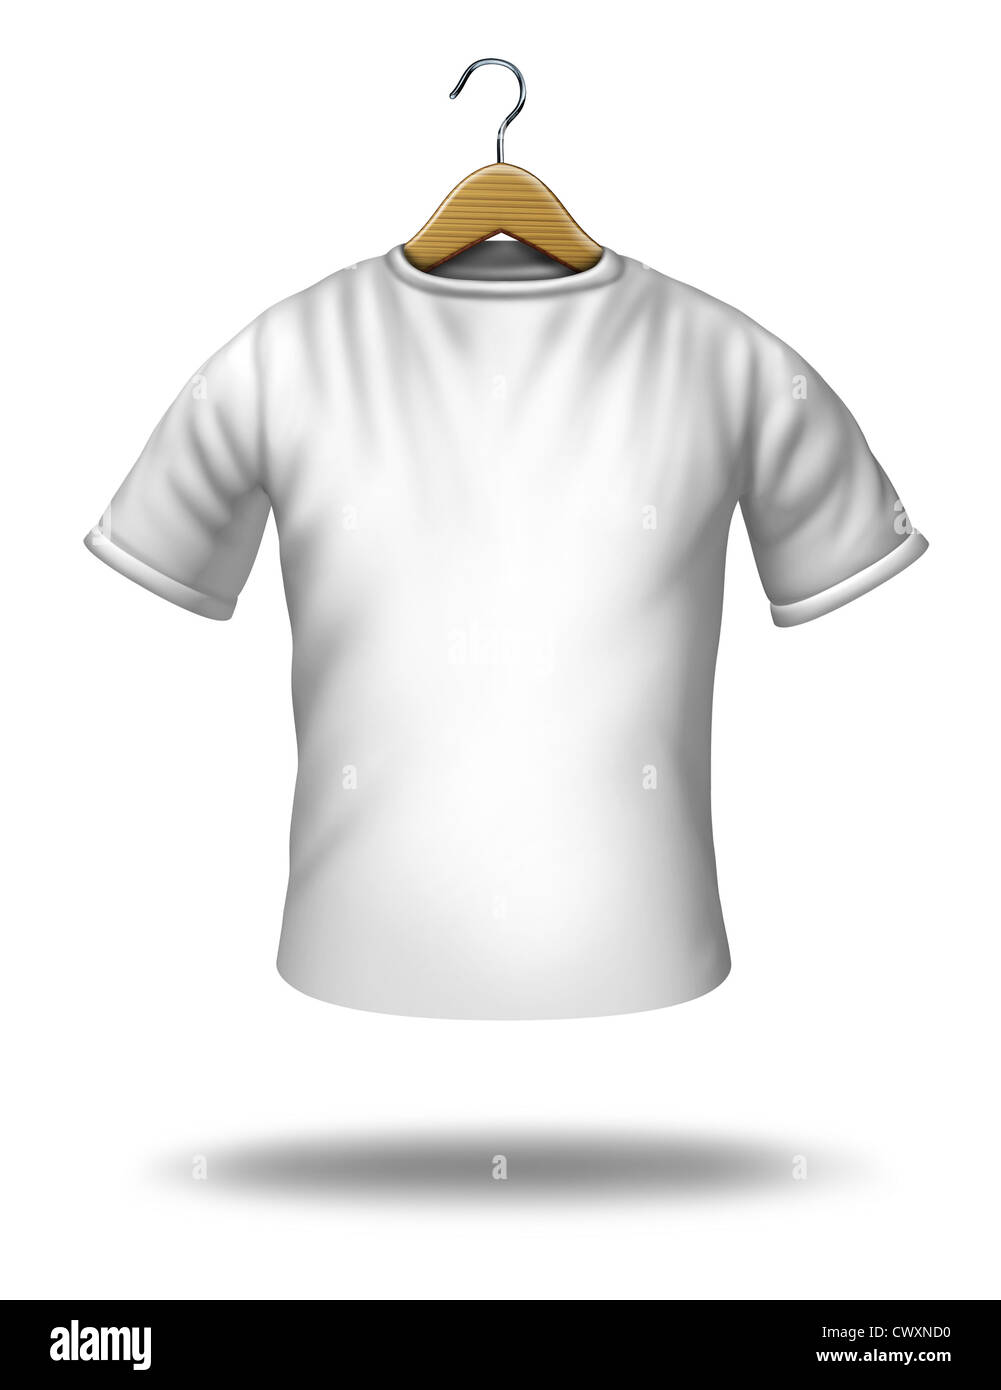 Abbigliamento appendiabiti su un vuoto bianco shirt o t-shirt sospeso in aria come un simbolo di merchandise e icona di tessili. Foto Stock